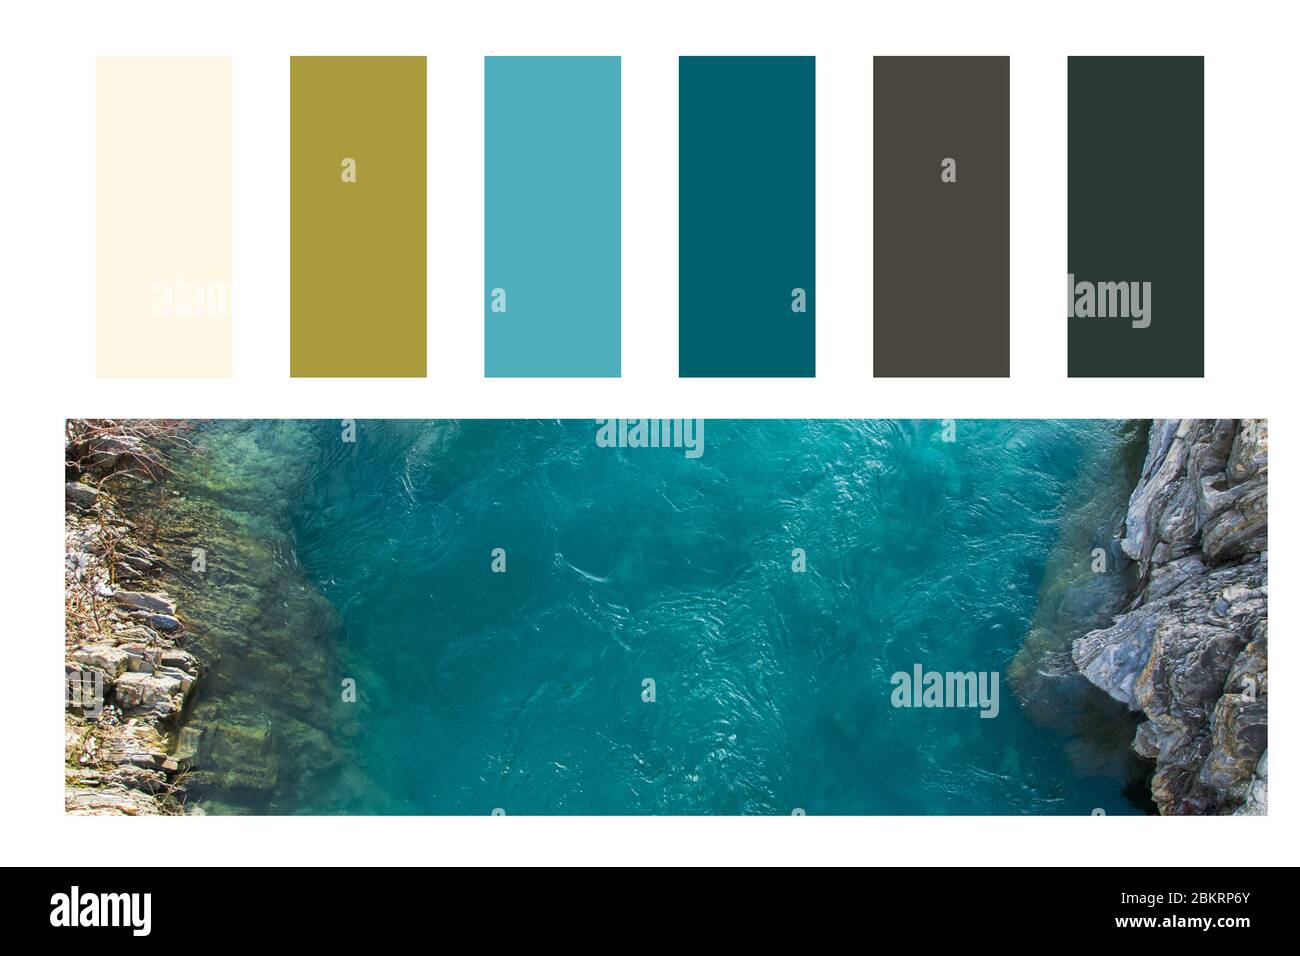 Vue aérienne sur les vagues de la mer se lavant sur la côte rocheuse dans une palette de couleurs, avec des nuances de couleurs gratuites Banque D'Images